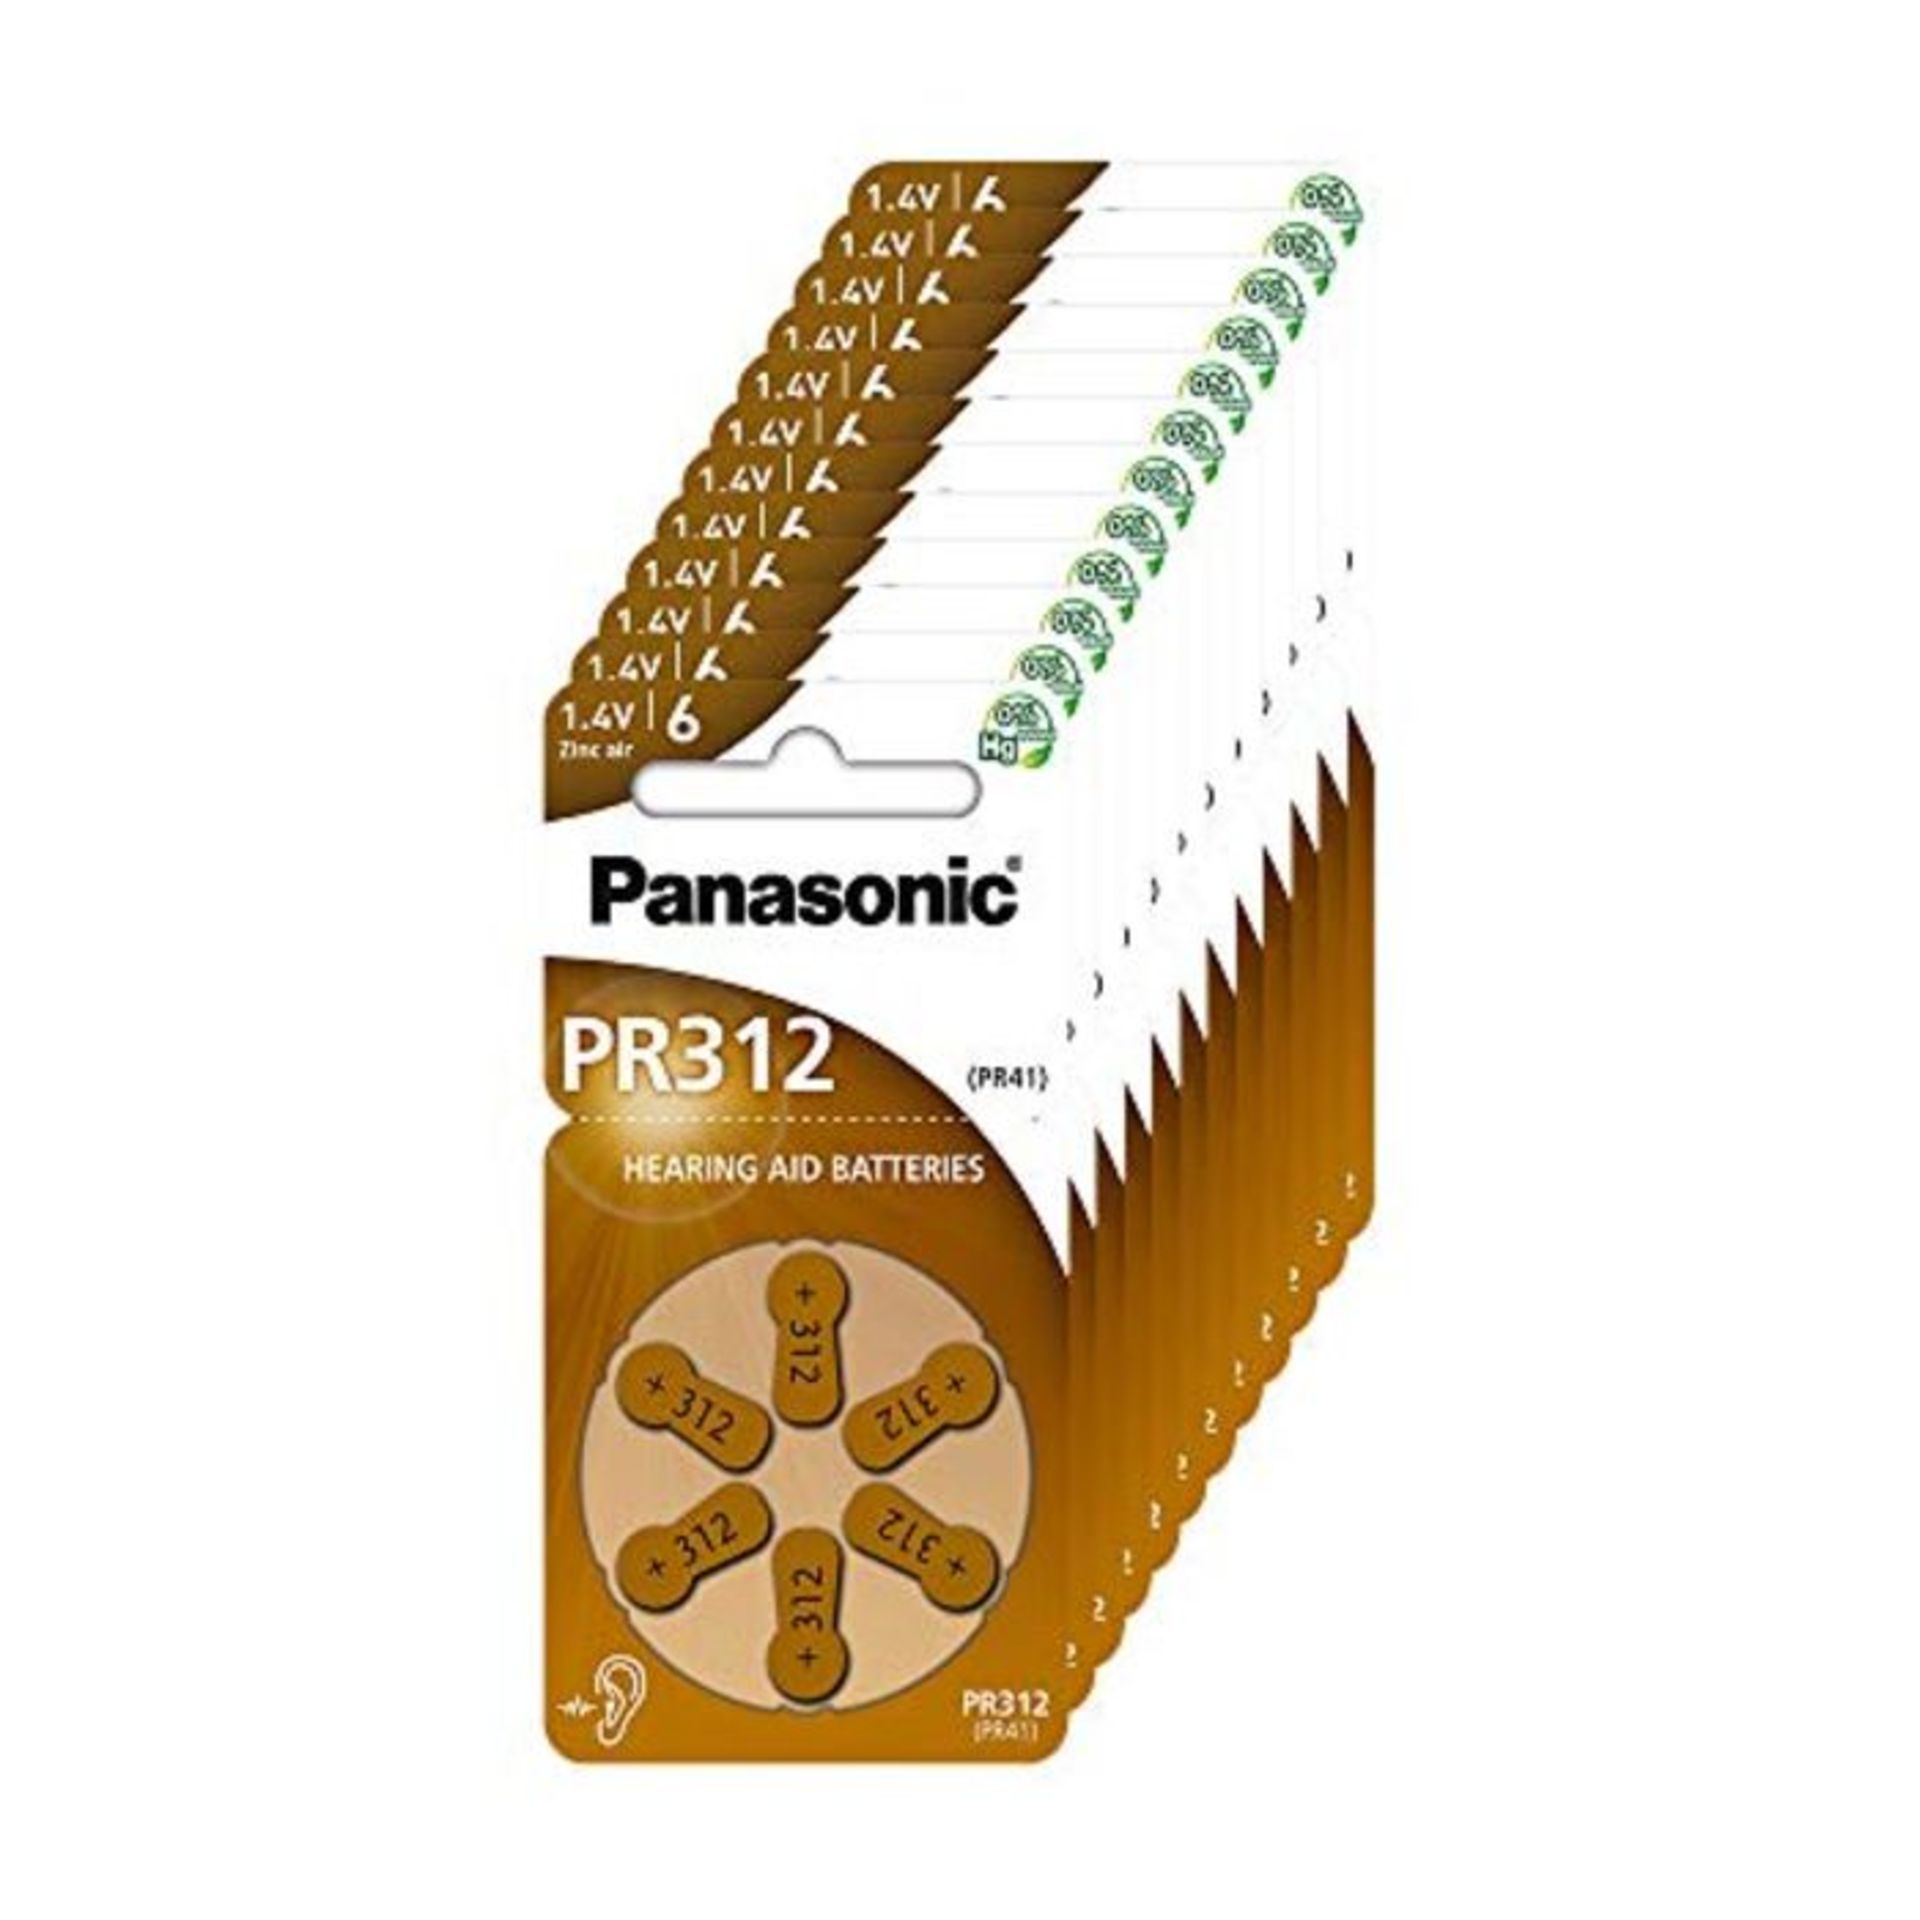 Panasonic PR312 Batterie zinco-aria per apparecchi acustici, Tipo 312, 1.4V, Batterie